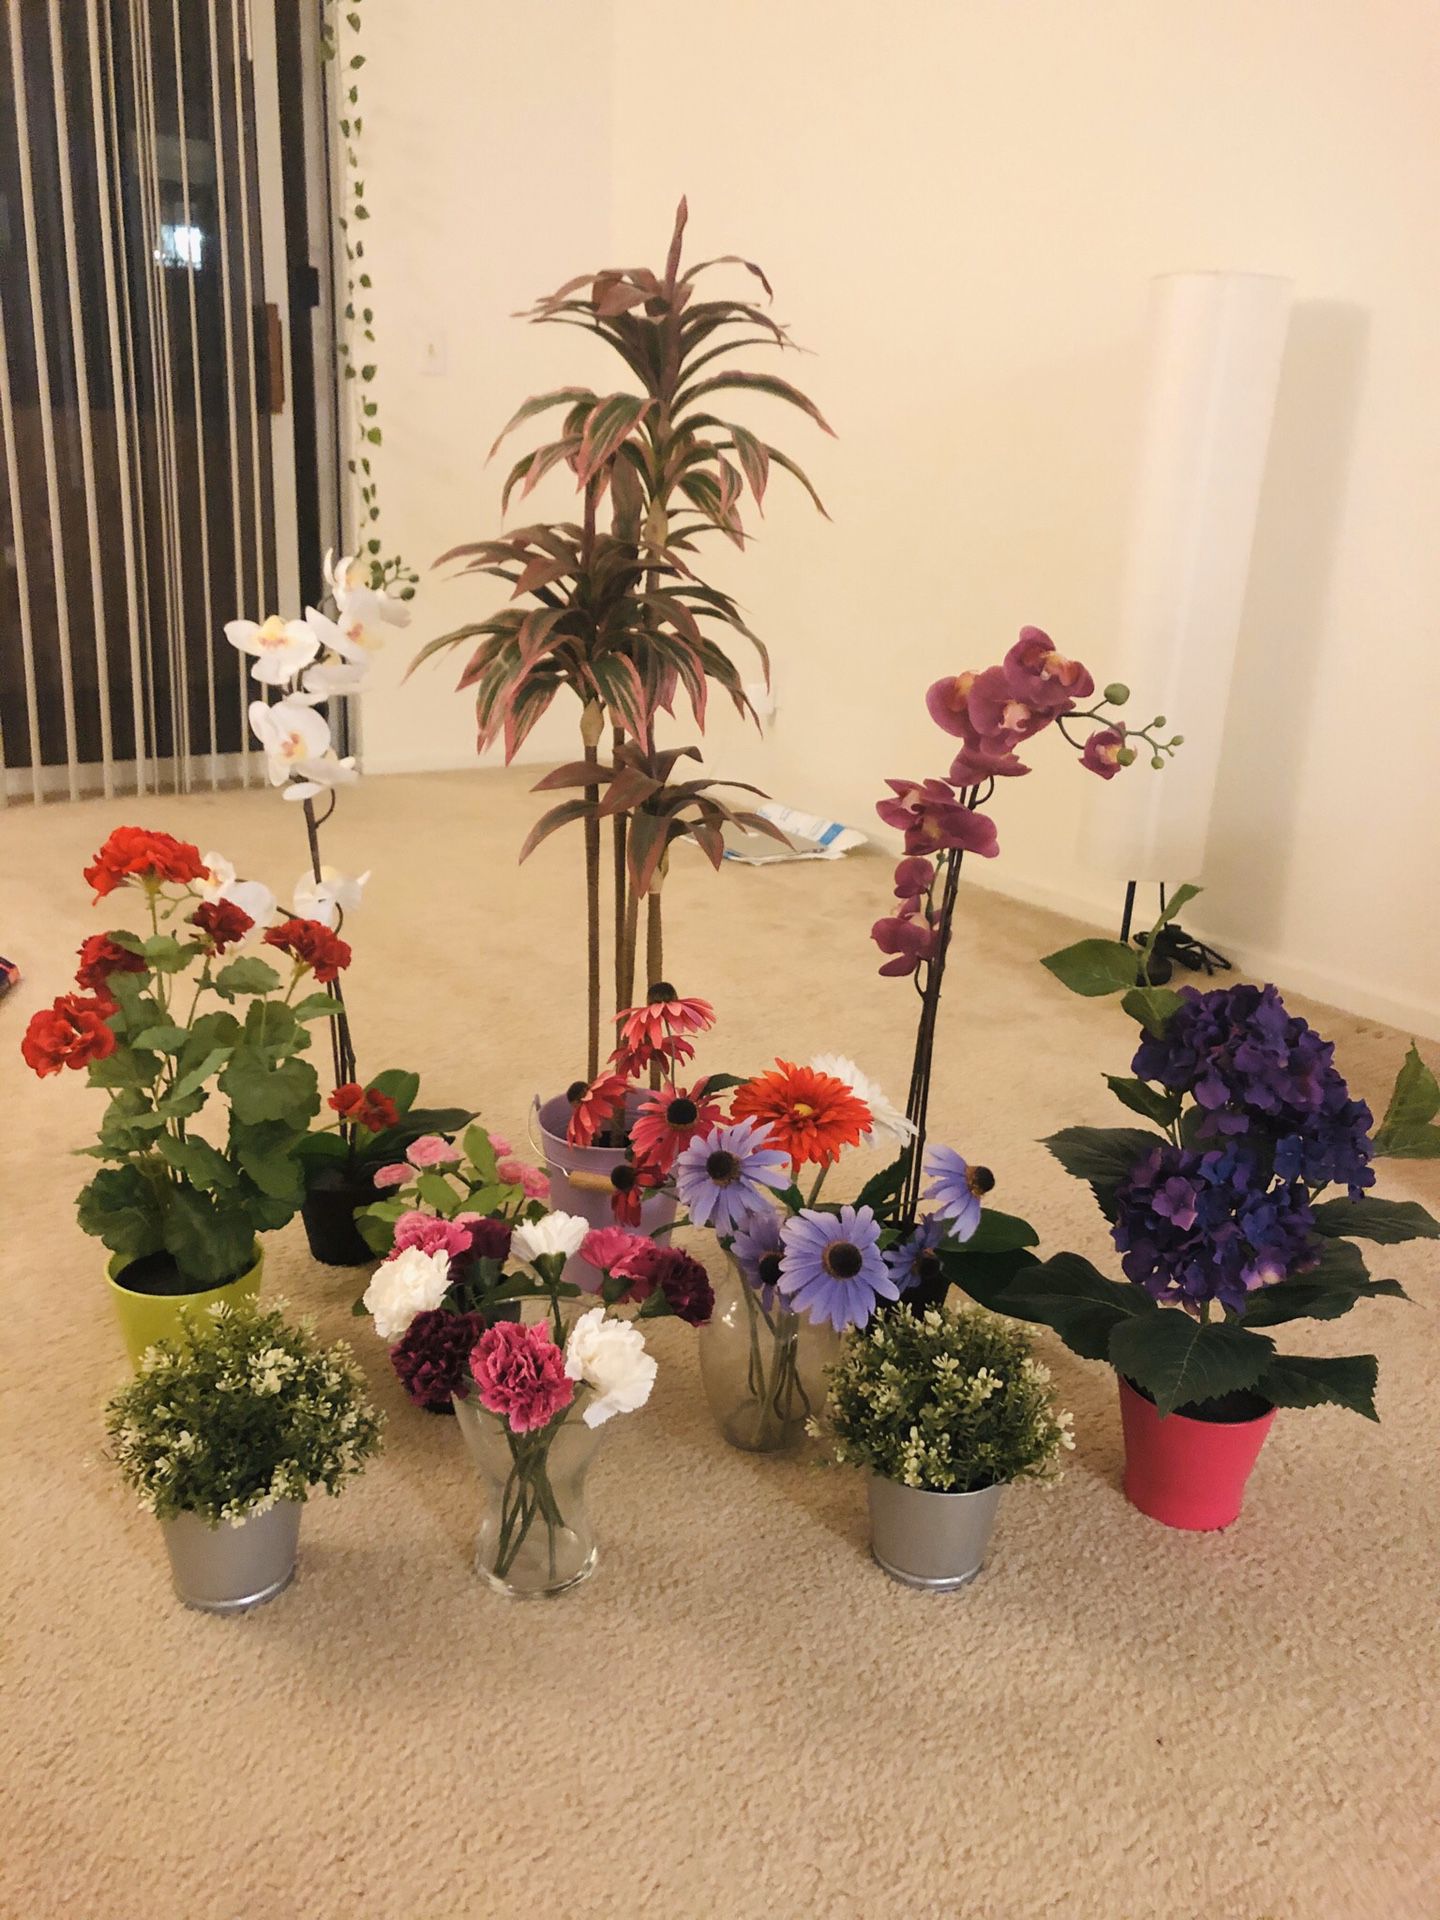 Artificial plants with pot/vase